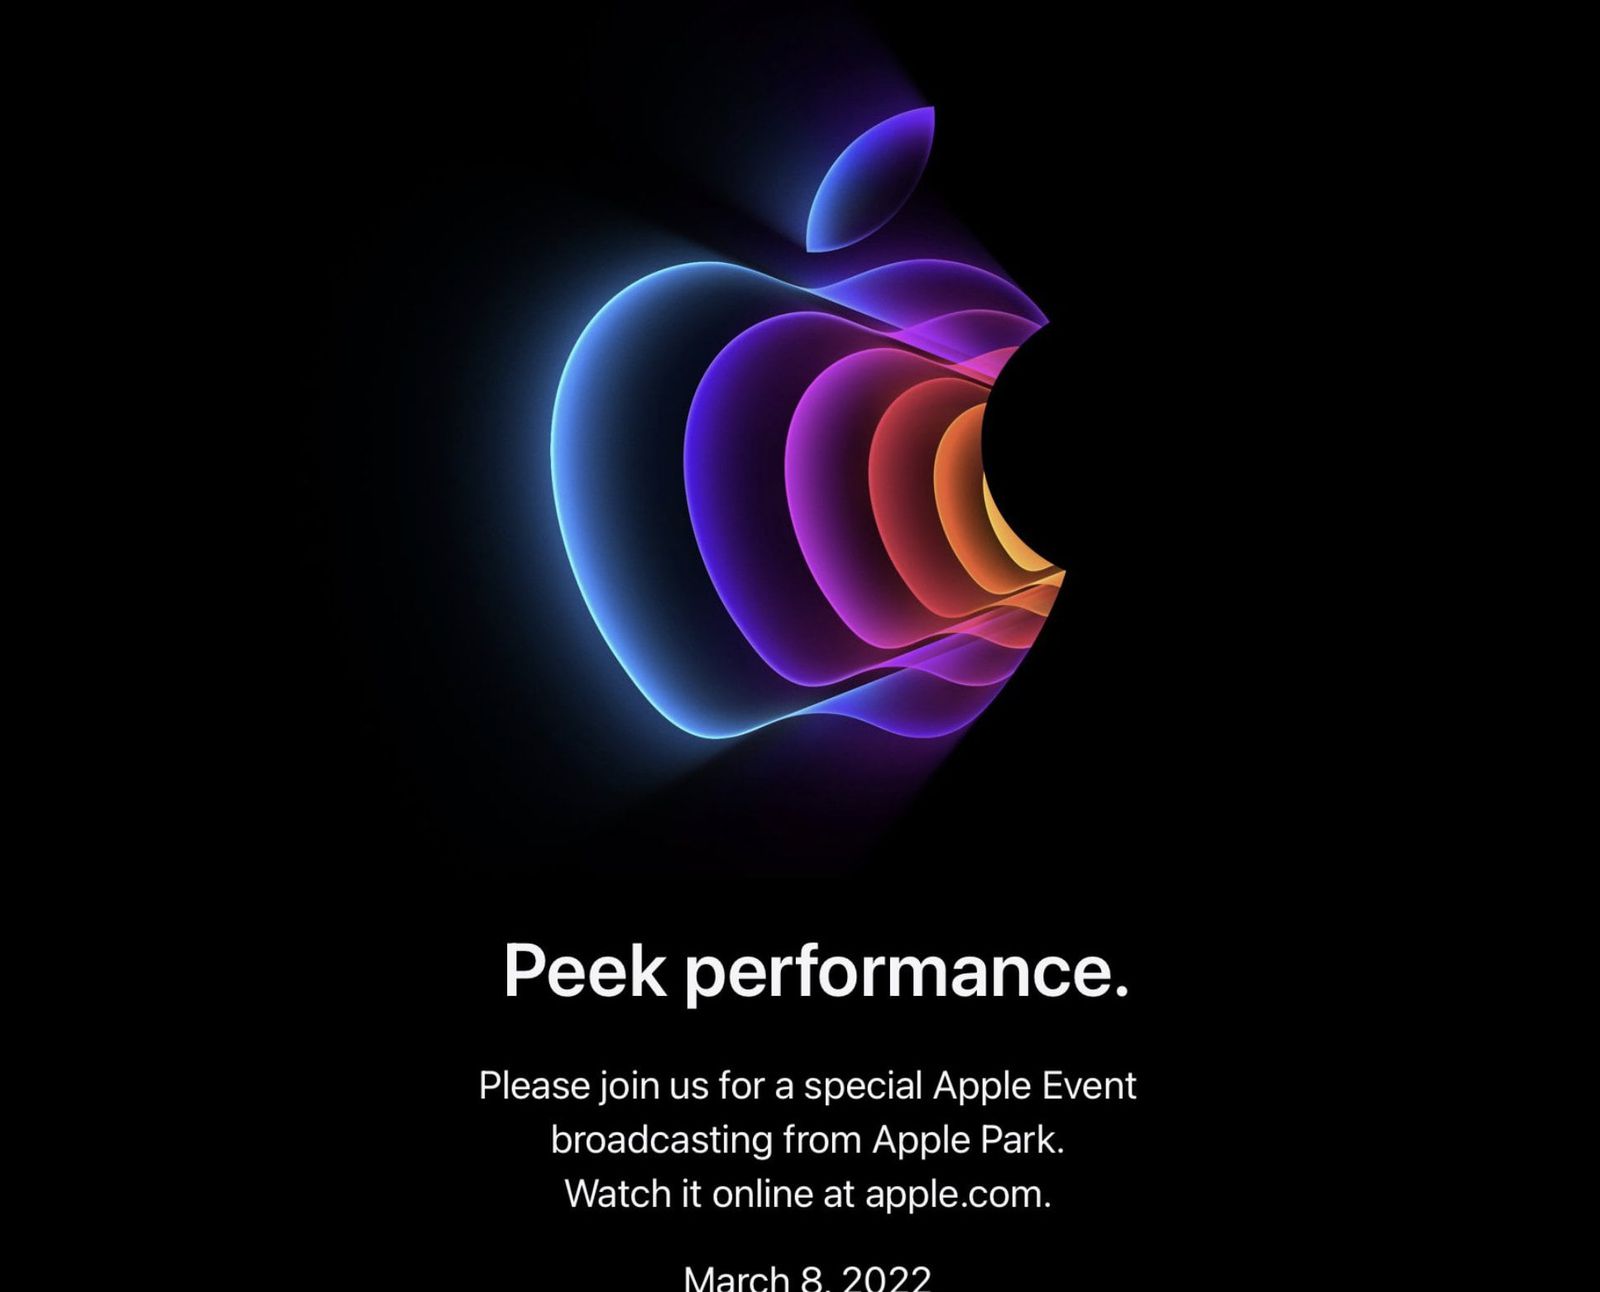 apple-event-peek-performance.jpg